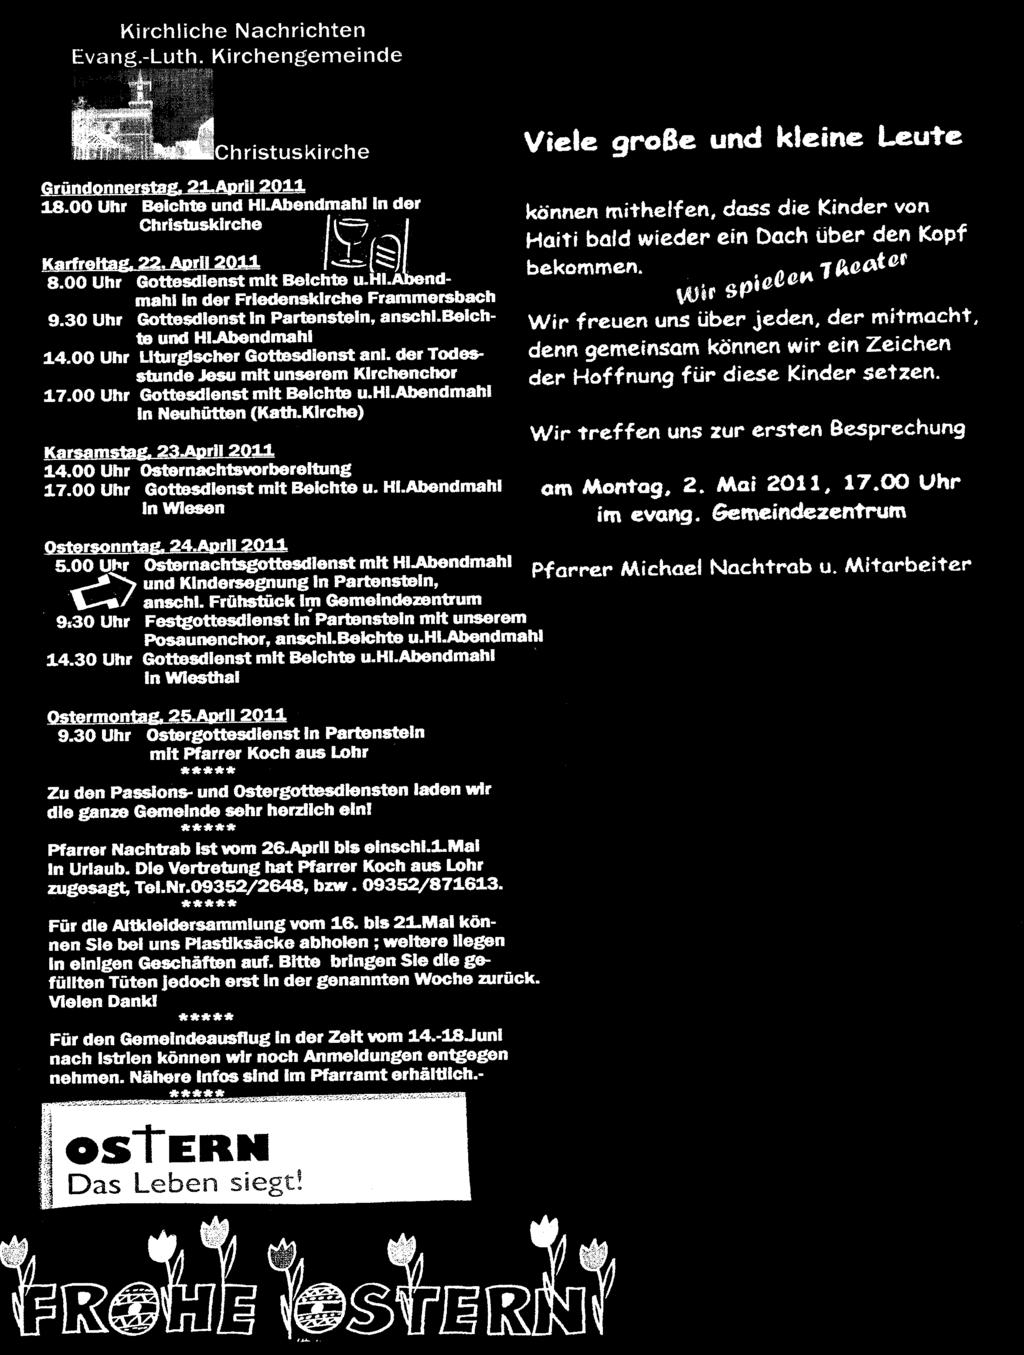 JFG Nordspessart,TSV Partenstein, Ergebnisse A-Jgd(U19) Dienstag 12.04. 18:30Uhr(Fbach) JFG Nordspessart : JFG Würzburg Süd 4:1 Samstag 16.04. 16:00Uhr (Fbach) JFG Nordspessart : SSV Kitzingen 3:4 B-Jgd(U17) Donnerstag 14.